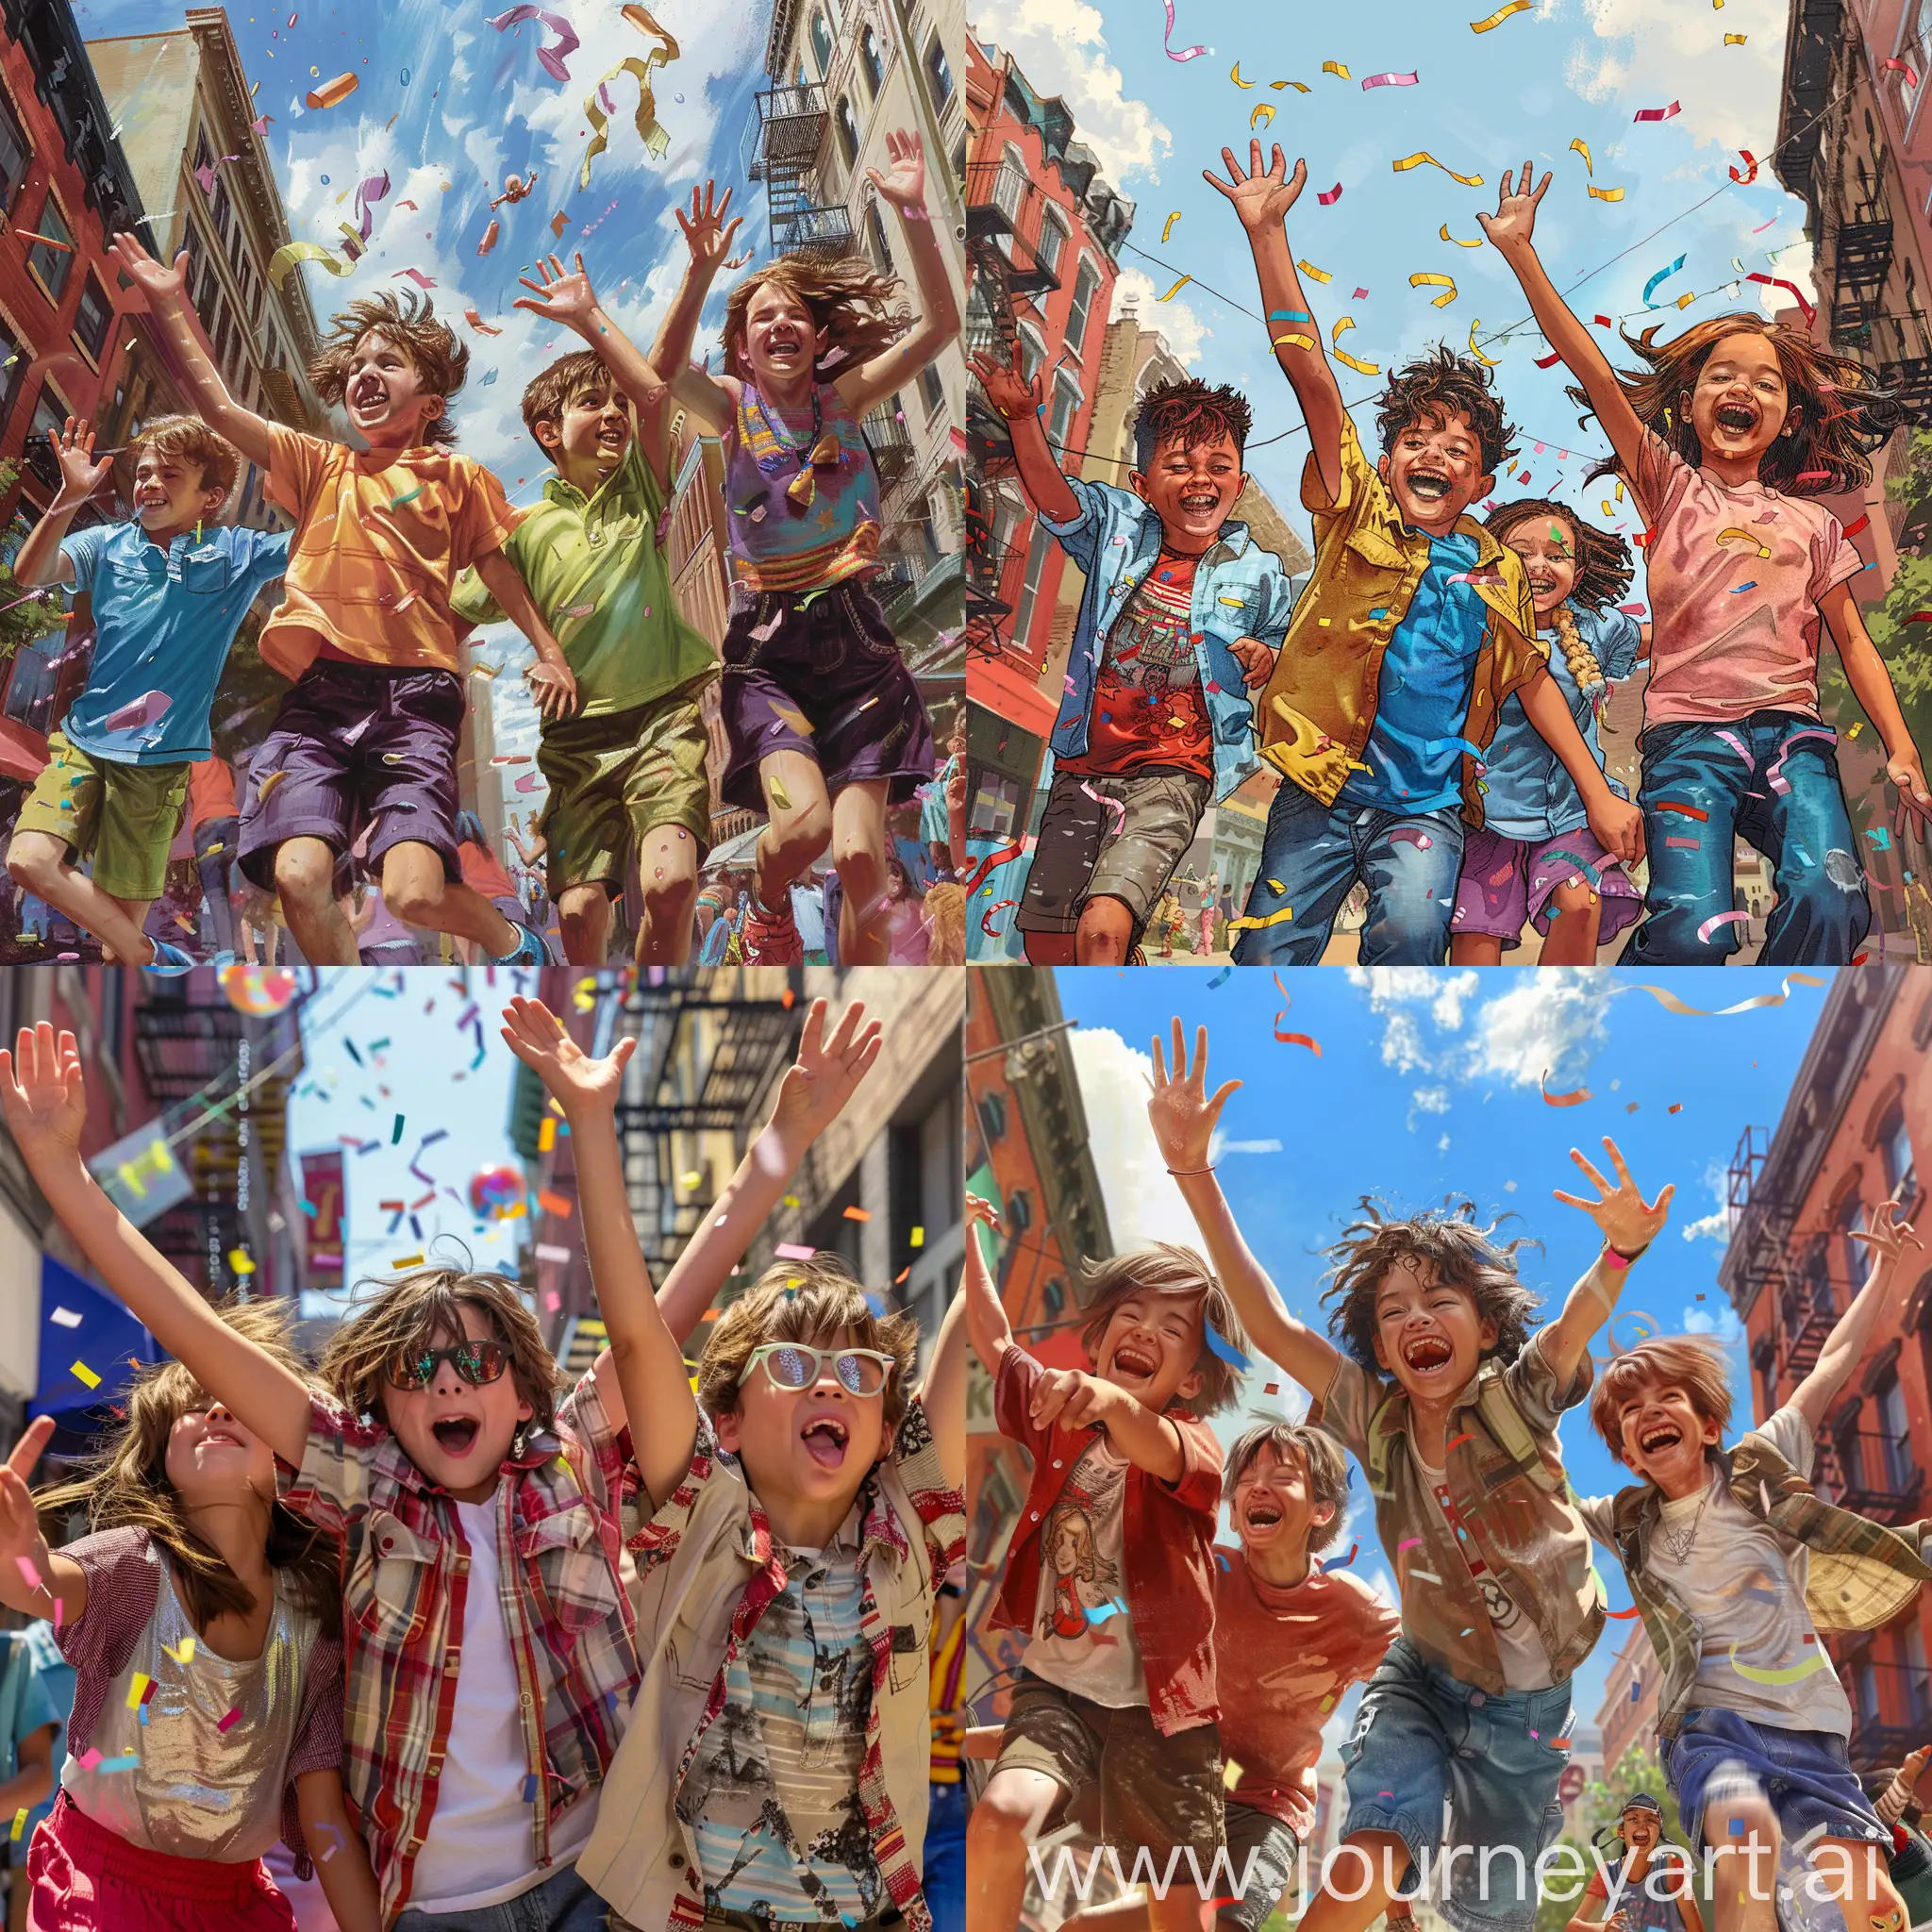 在美国的街头儿童疯狂派对，3男2女5个小孩在一起庆祝着，并且双手挥动着，像飞一样的动作，真实的场景